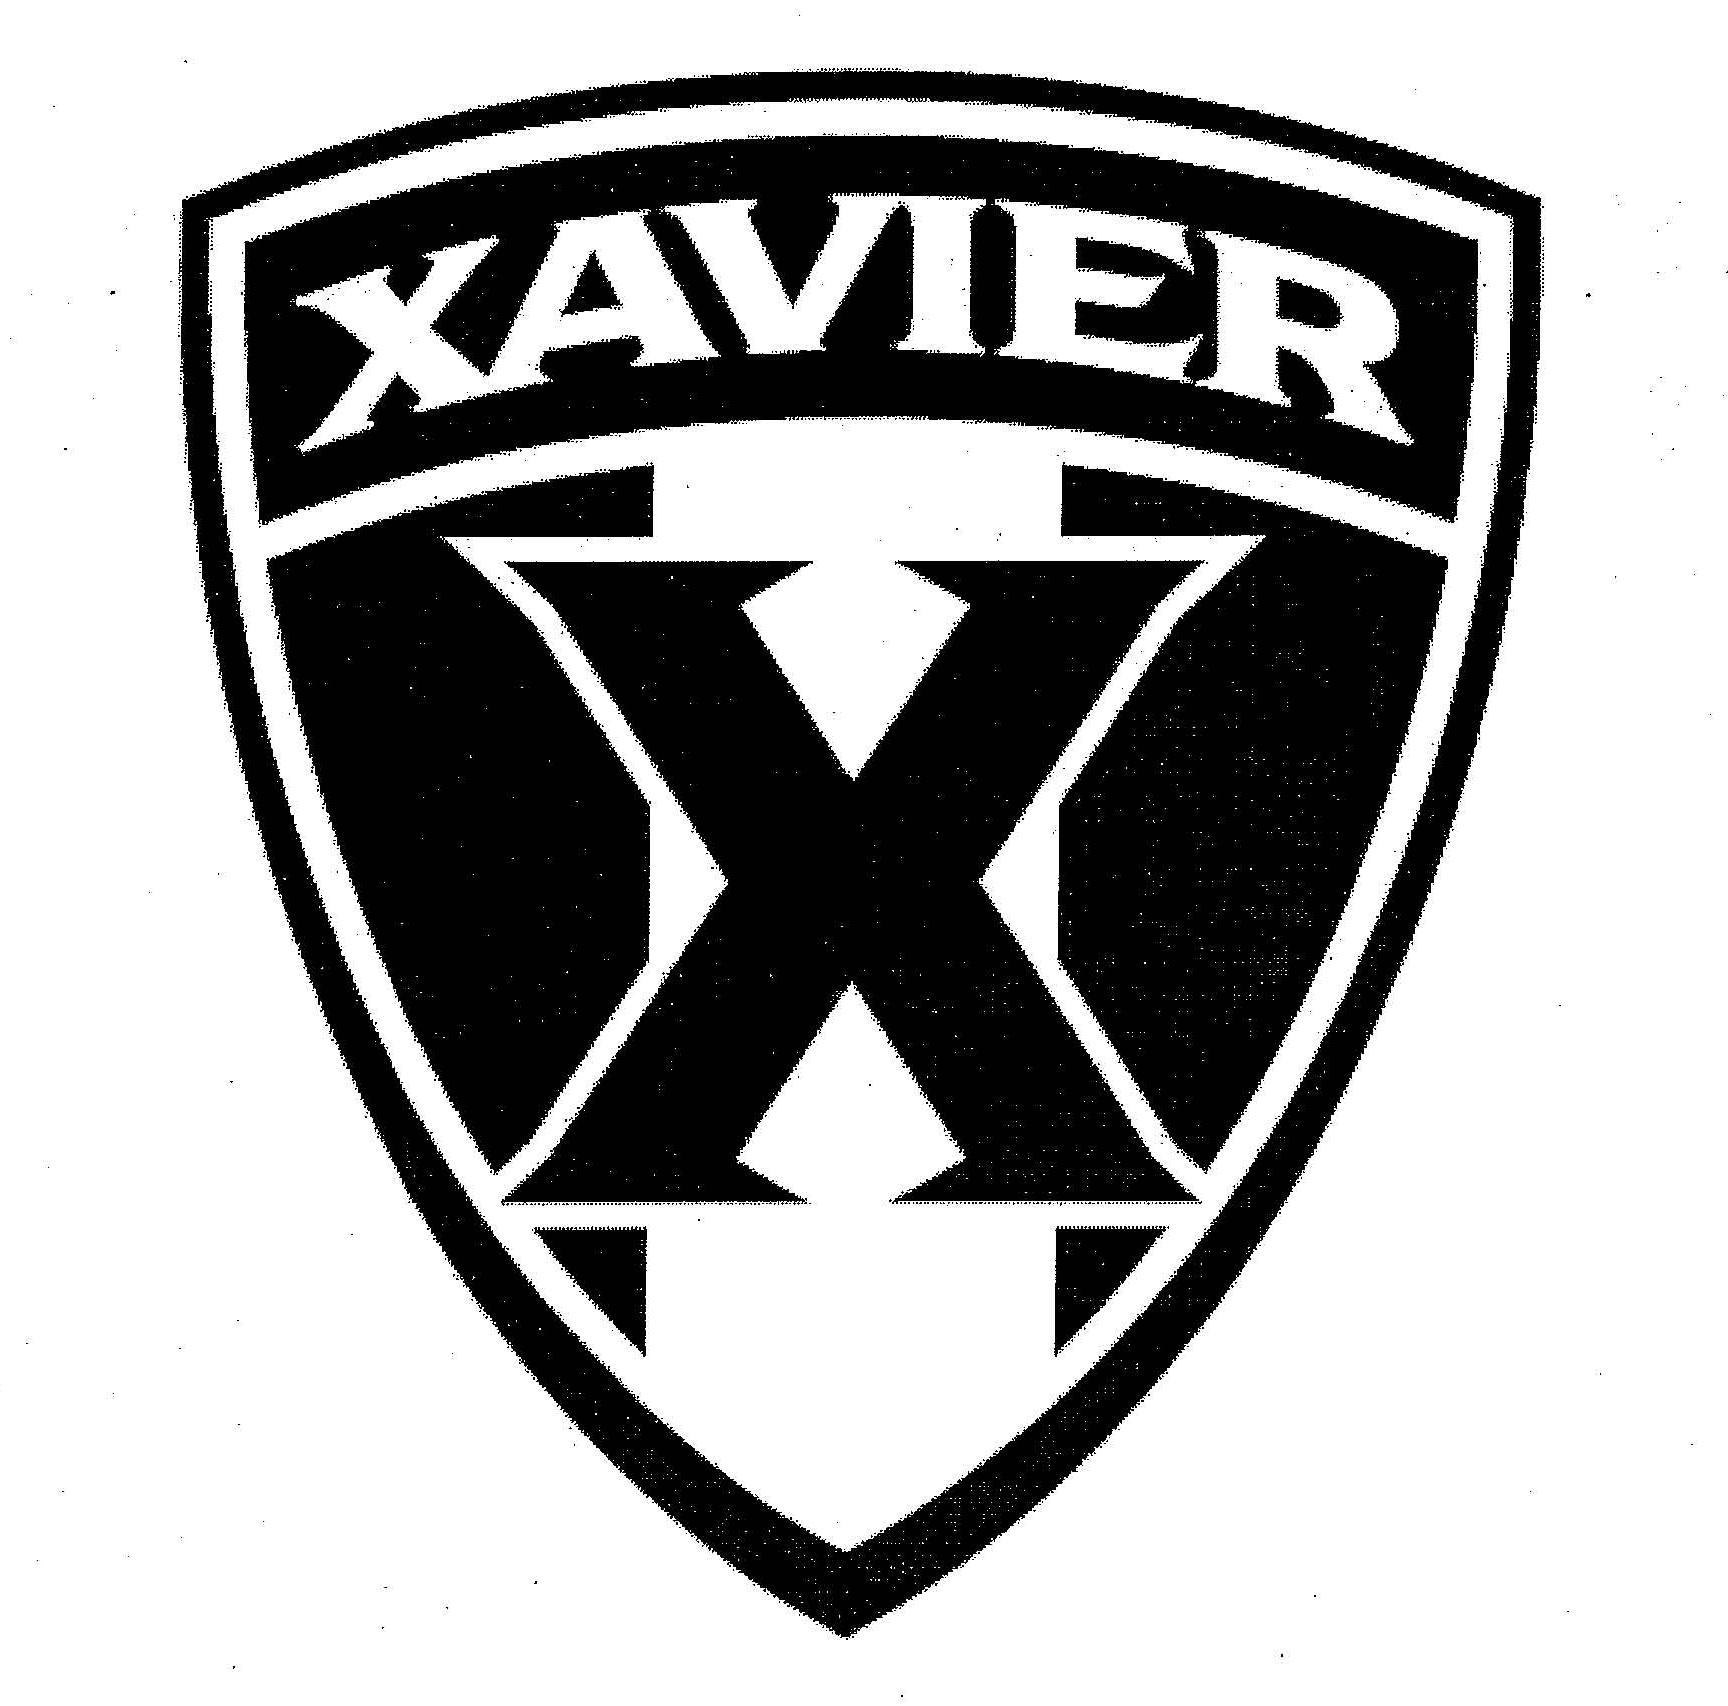 XAVIER X